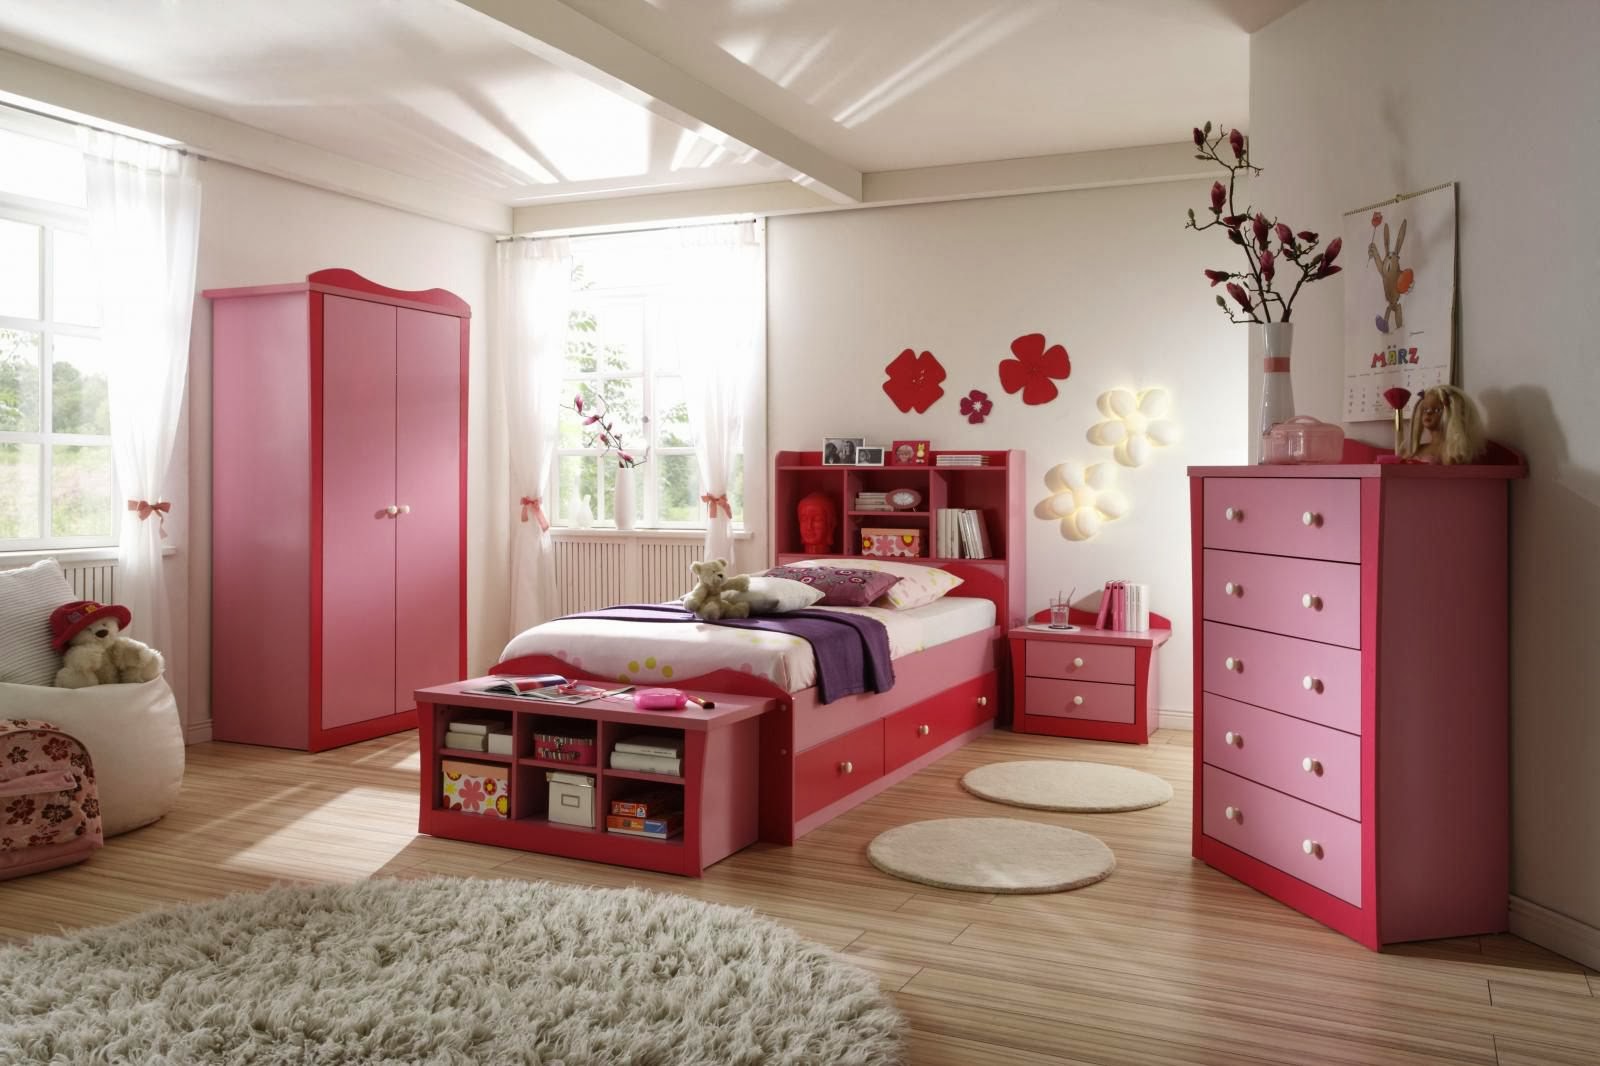 10 Desain Kamar Tidur Anak Perempuan Warna Pink